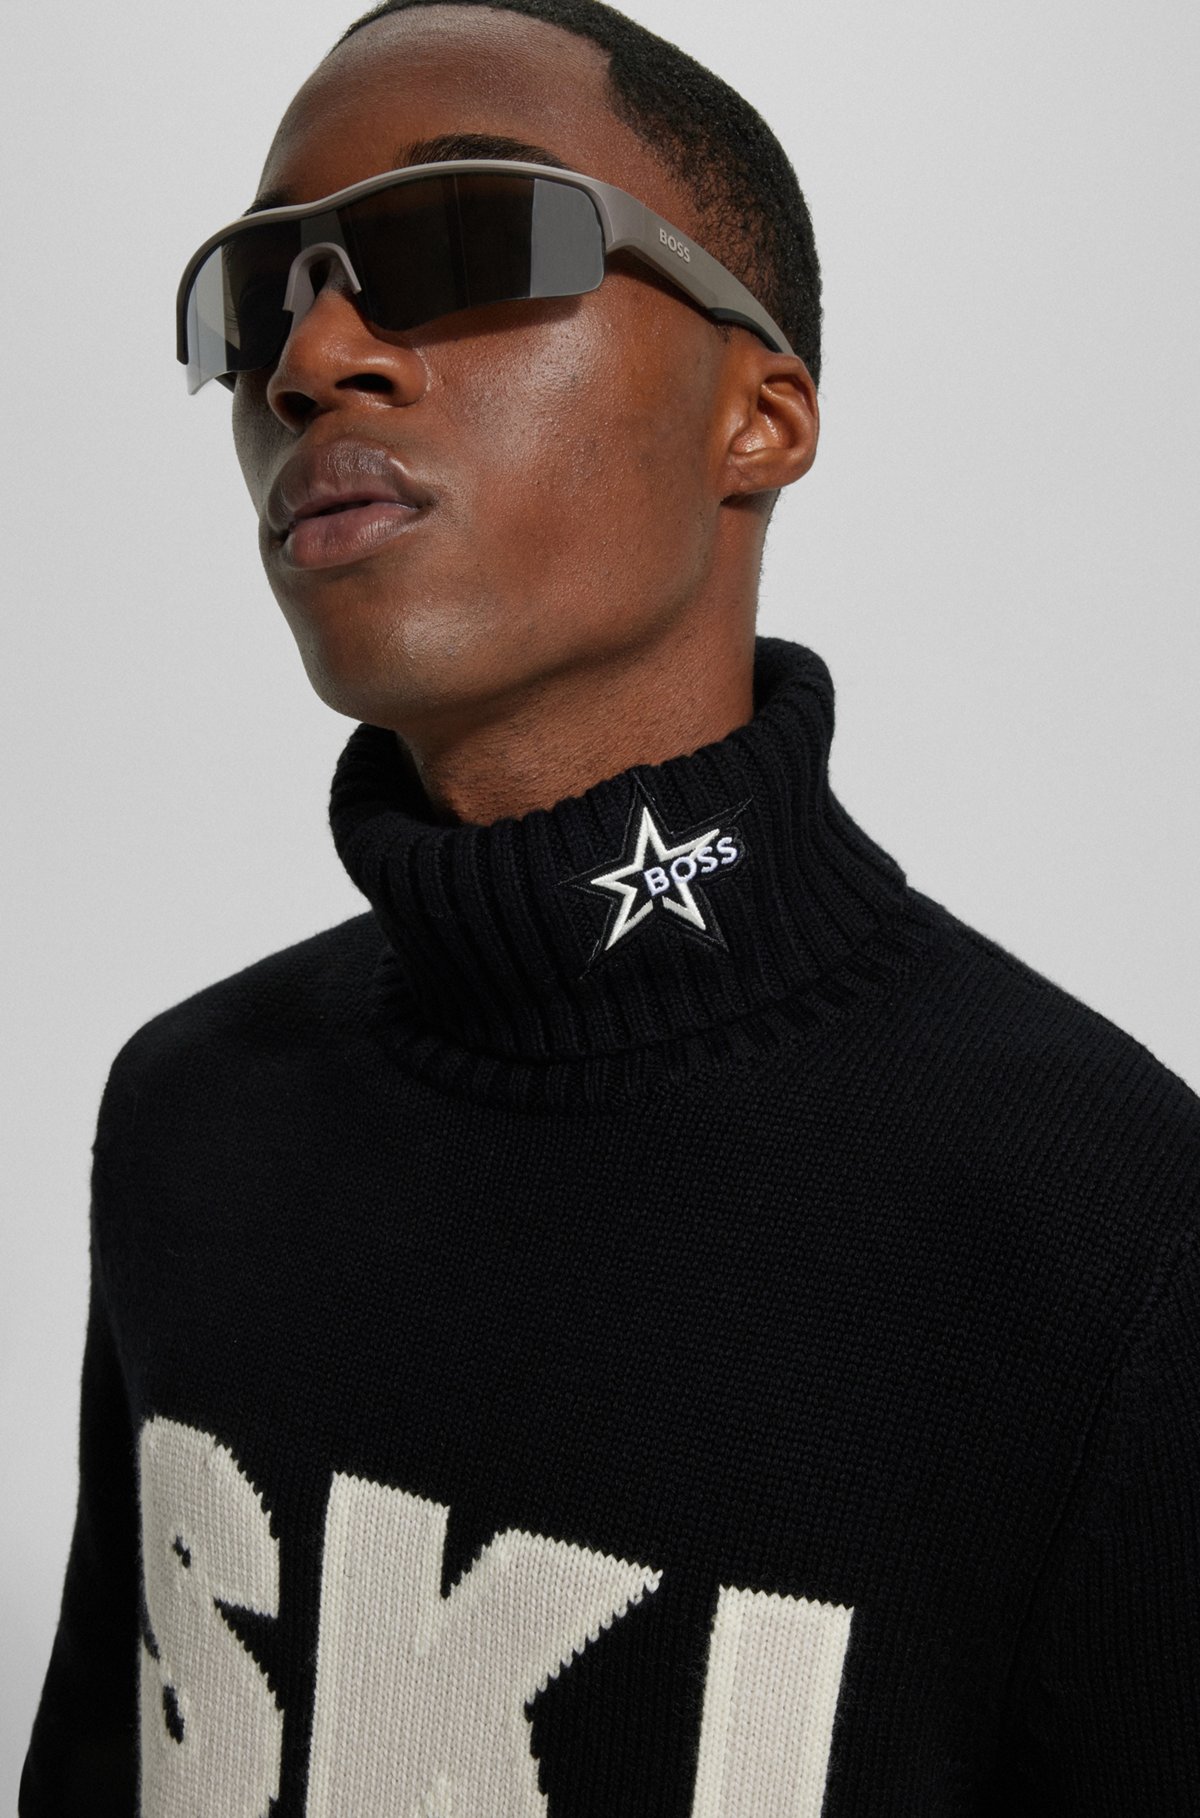 Turtleneck Sweaters in Black by HUGO BOSS